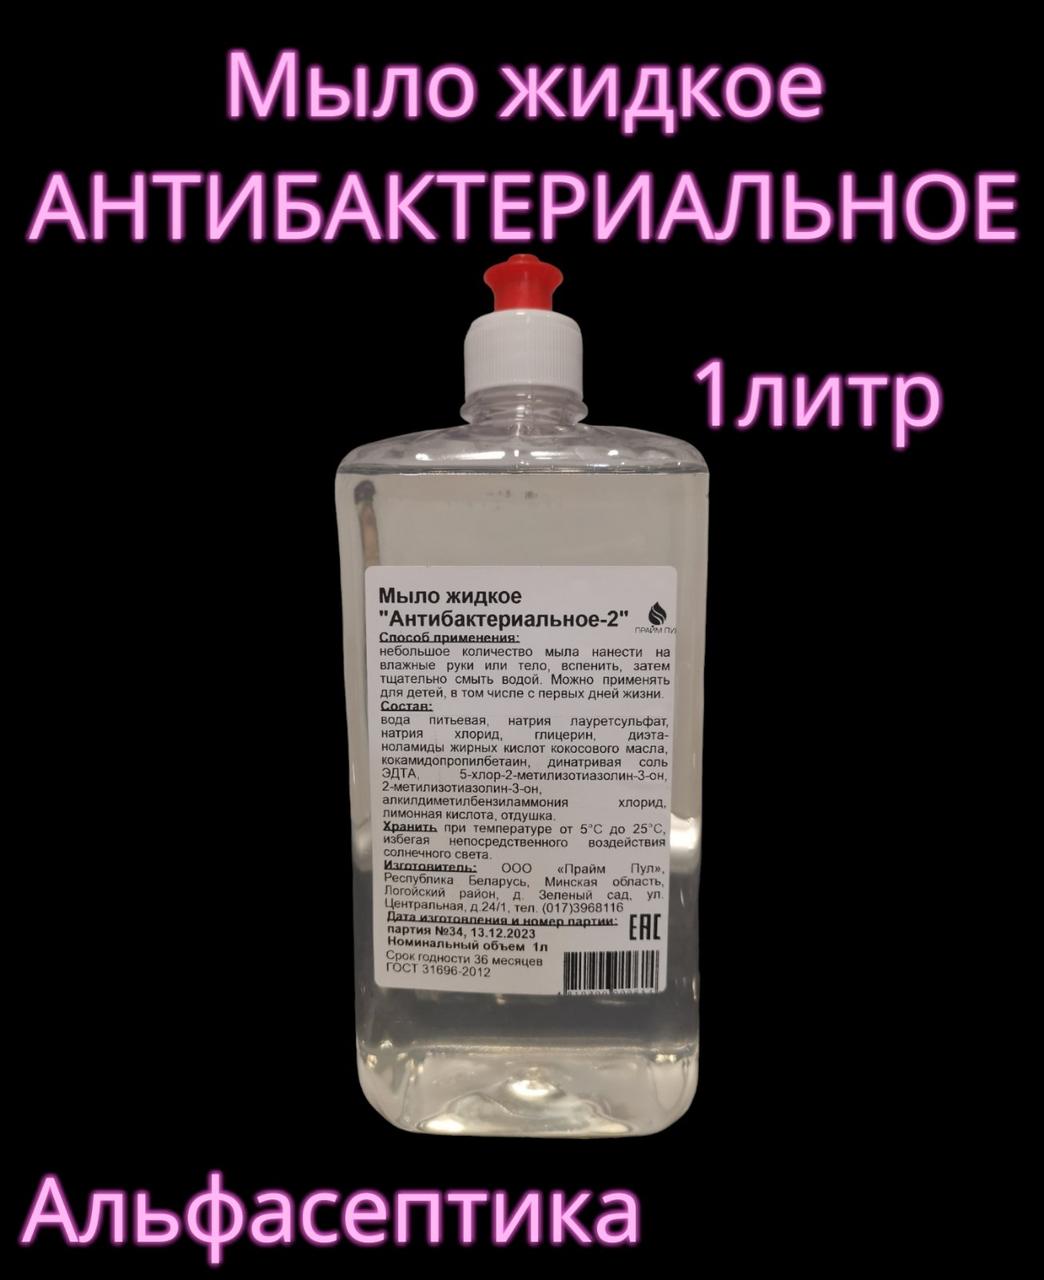 АНТИБАКТЕРИАЛЬНОЕ-2 жидкое мыло флакон 1 литр для установки в локтевые дозаторы